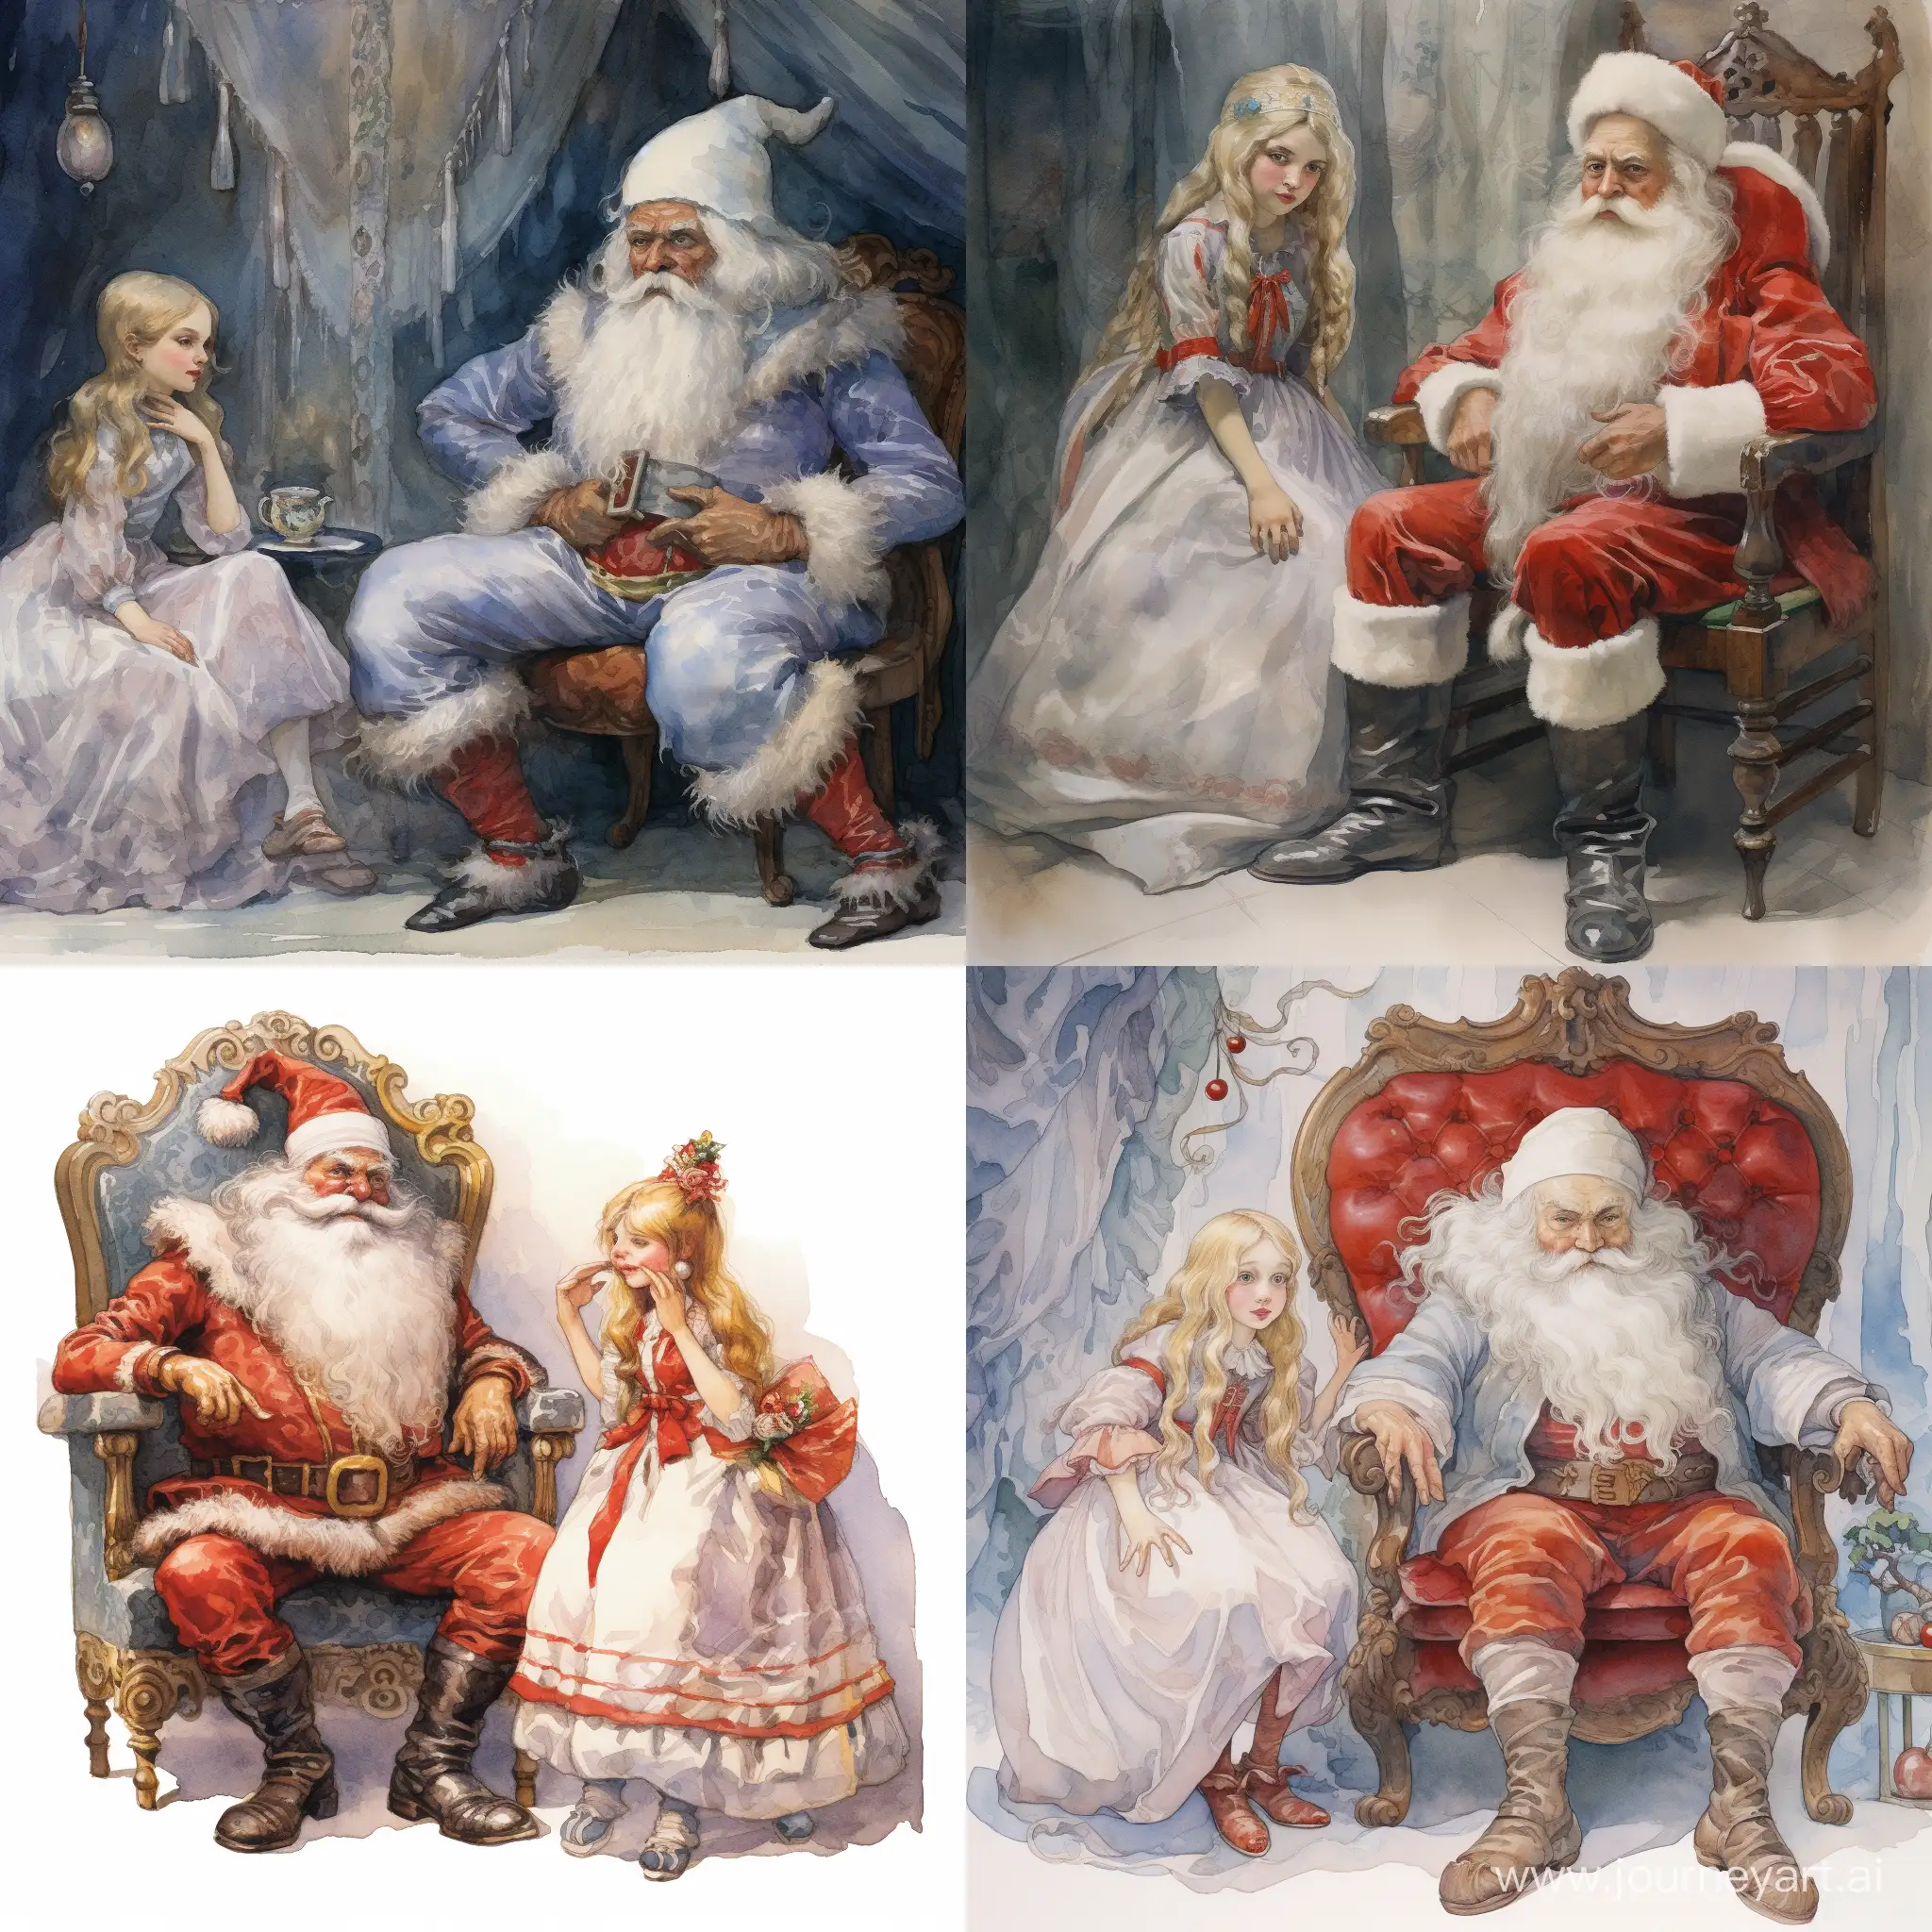 Дед Мороз сидит привязанный к стулу, во рту торчит кляп, рядом стоит недовольная Снегурочка